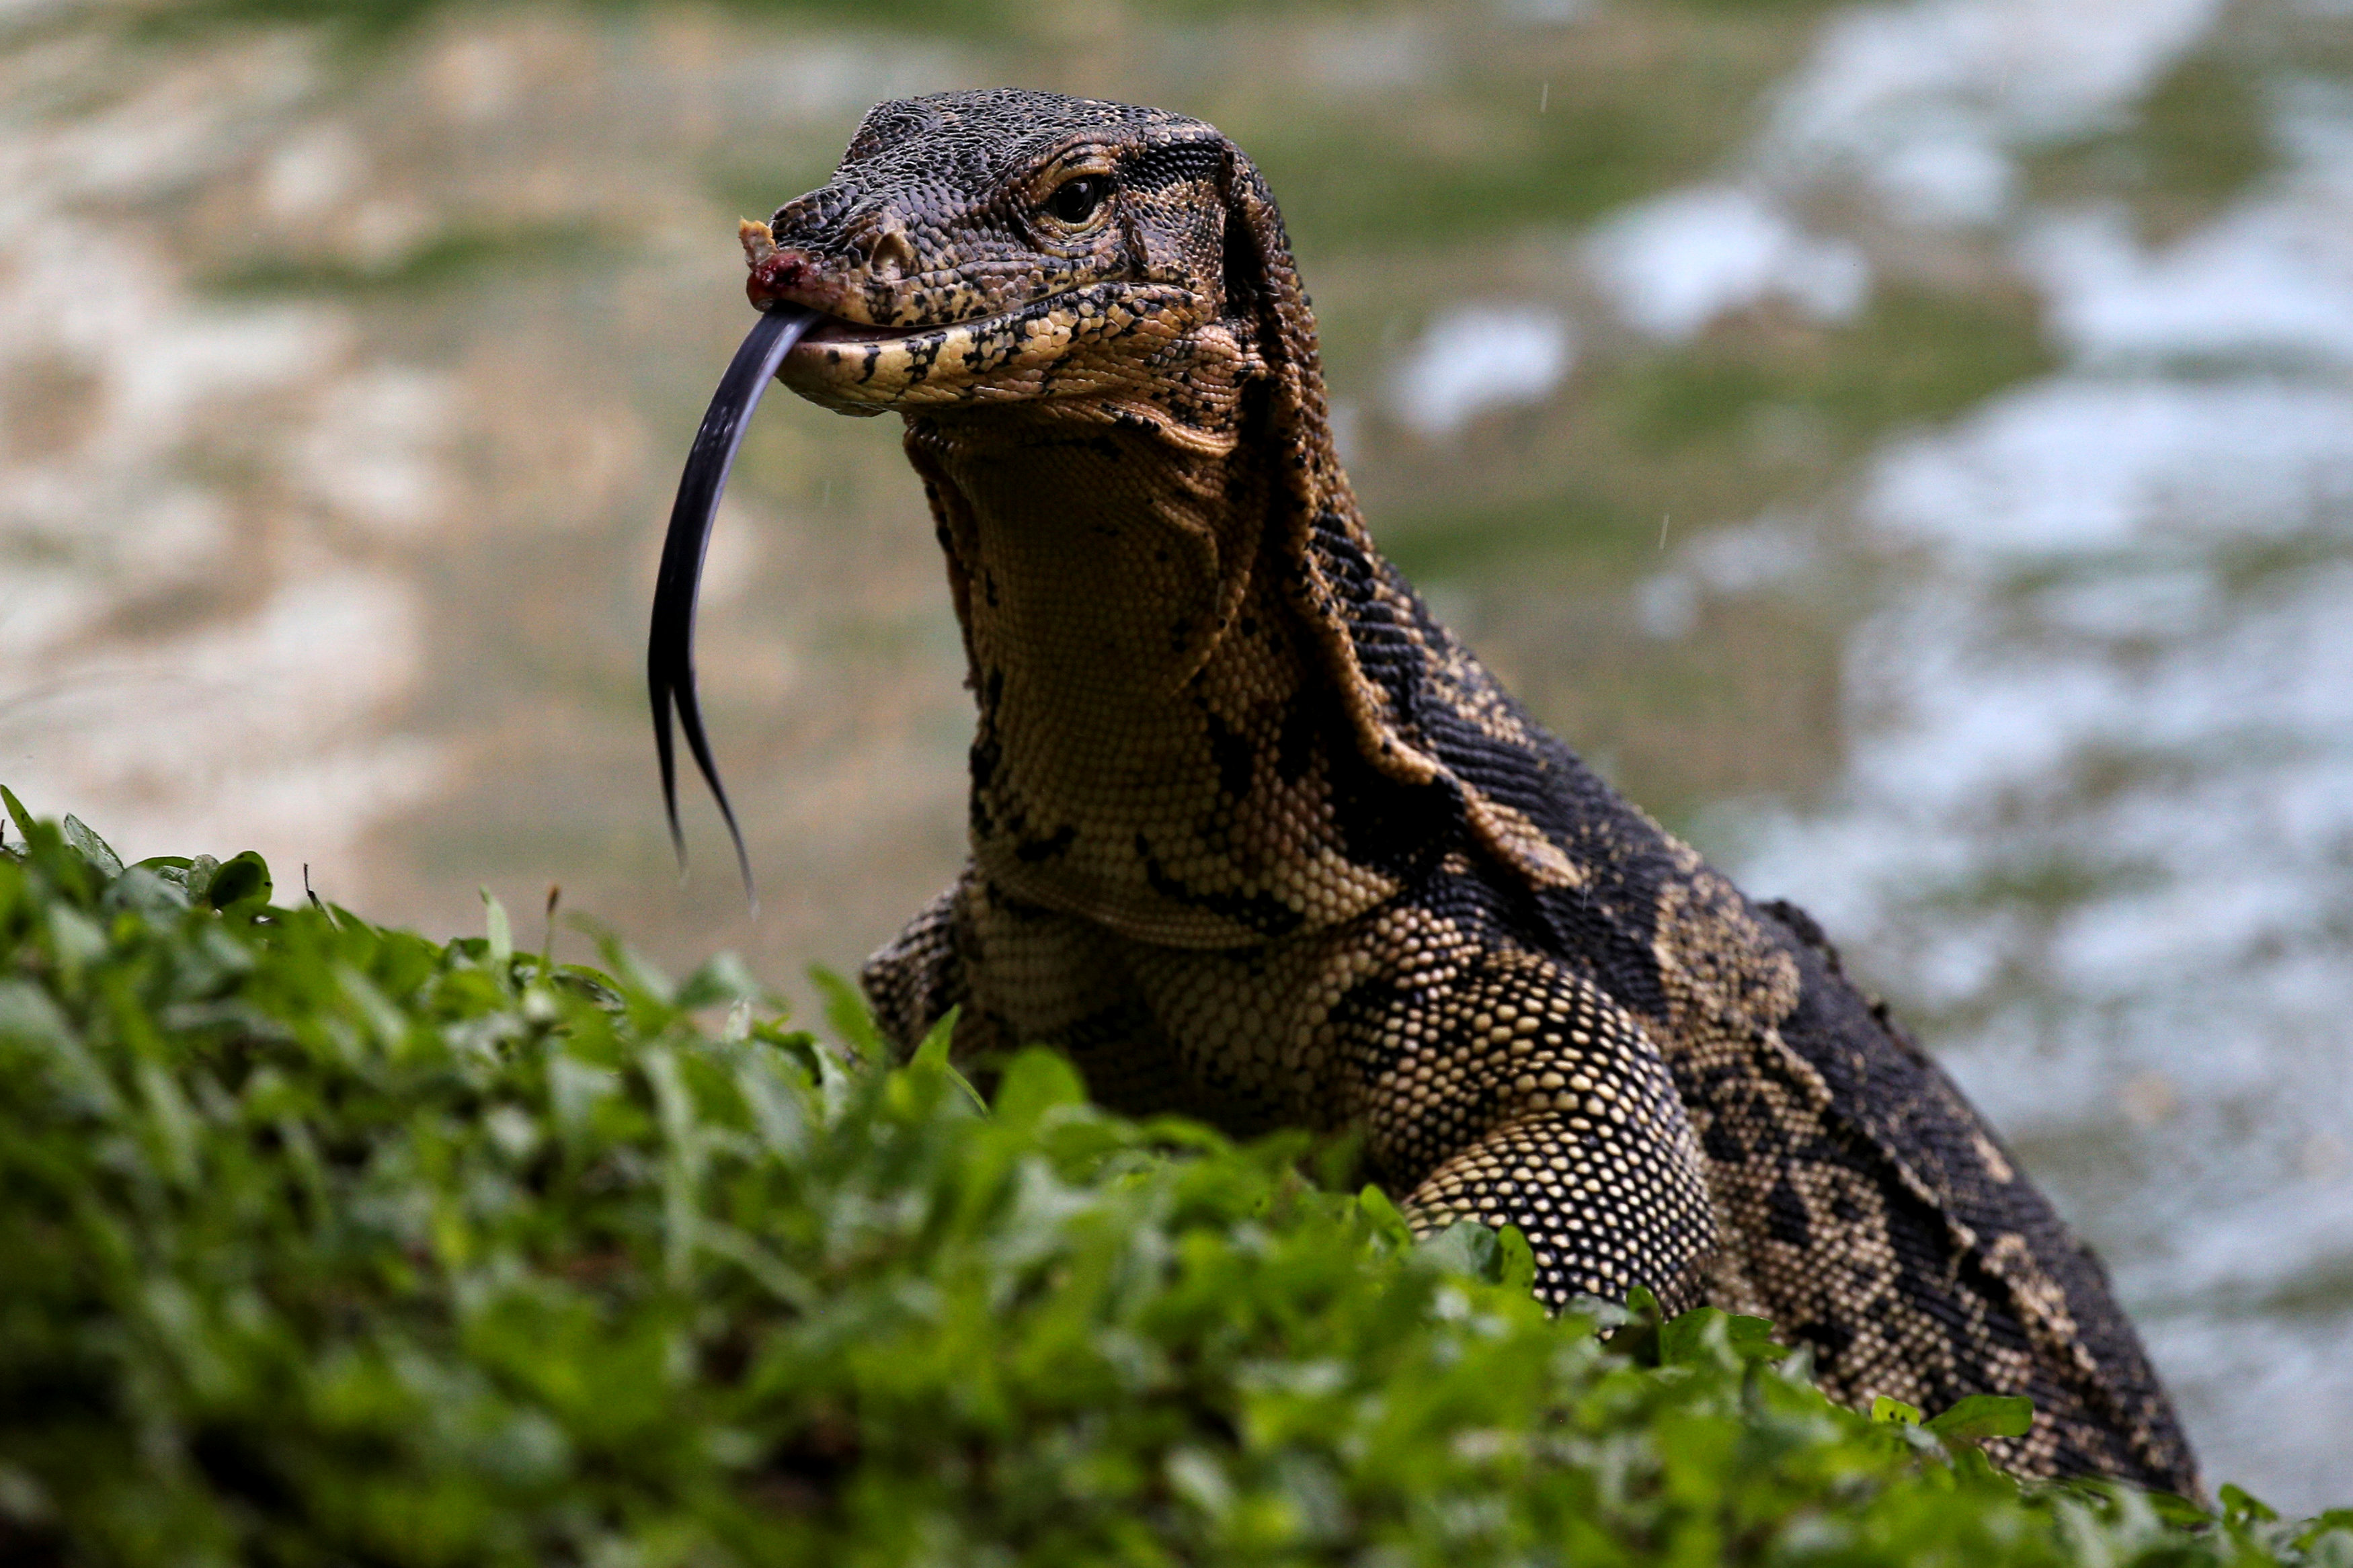 Bangkok rids city park of giant lizards